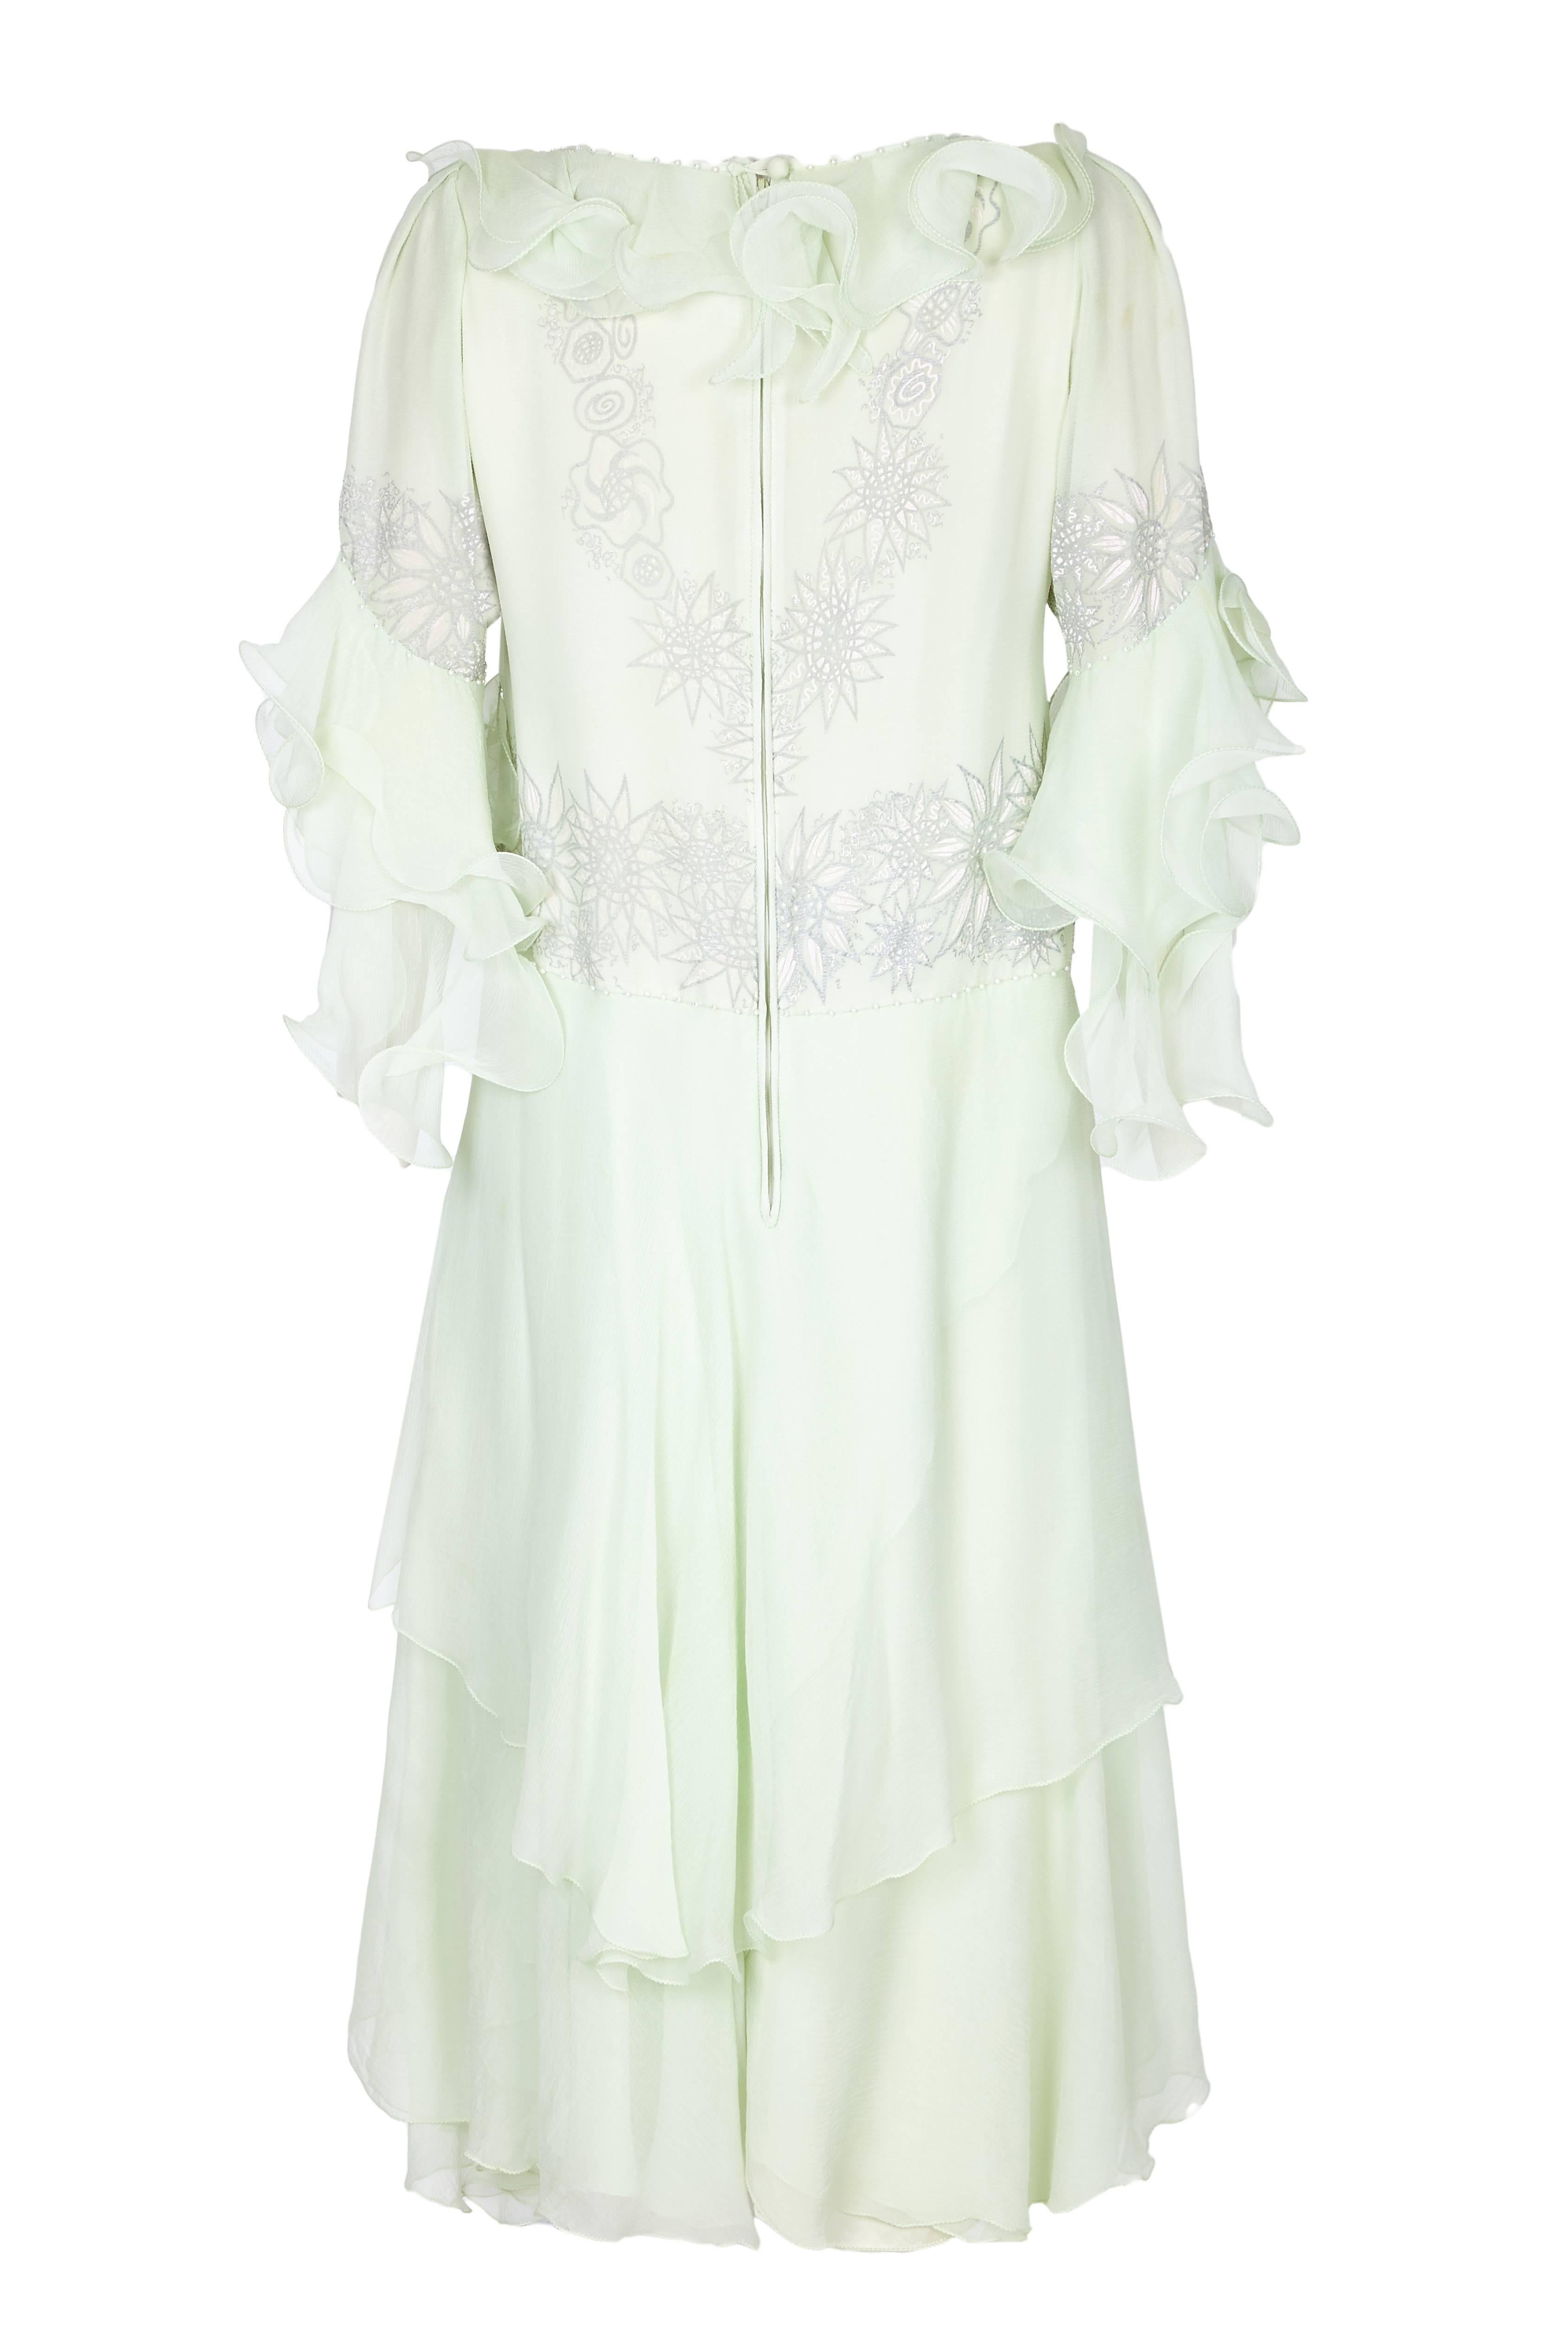 Superbe robe vintage des années 1980 en mousseline de soie vert pâle de Zandra Rhode couture. La robe est décorée d'un magnifique motif floral blanc et gris peint à la main, parsemé de perles et de strass. La robe est de coupe droite, sans modelage